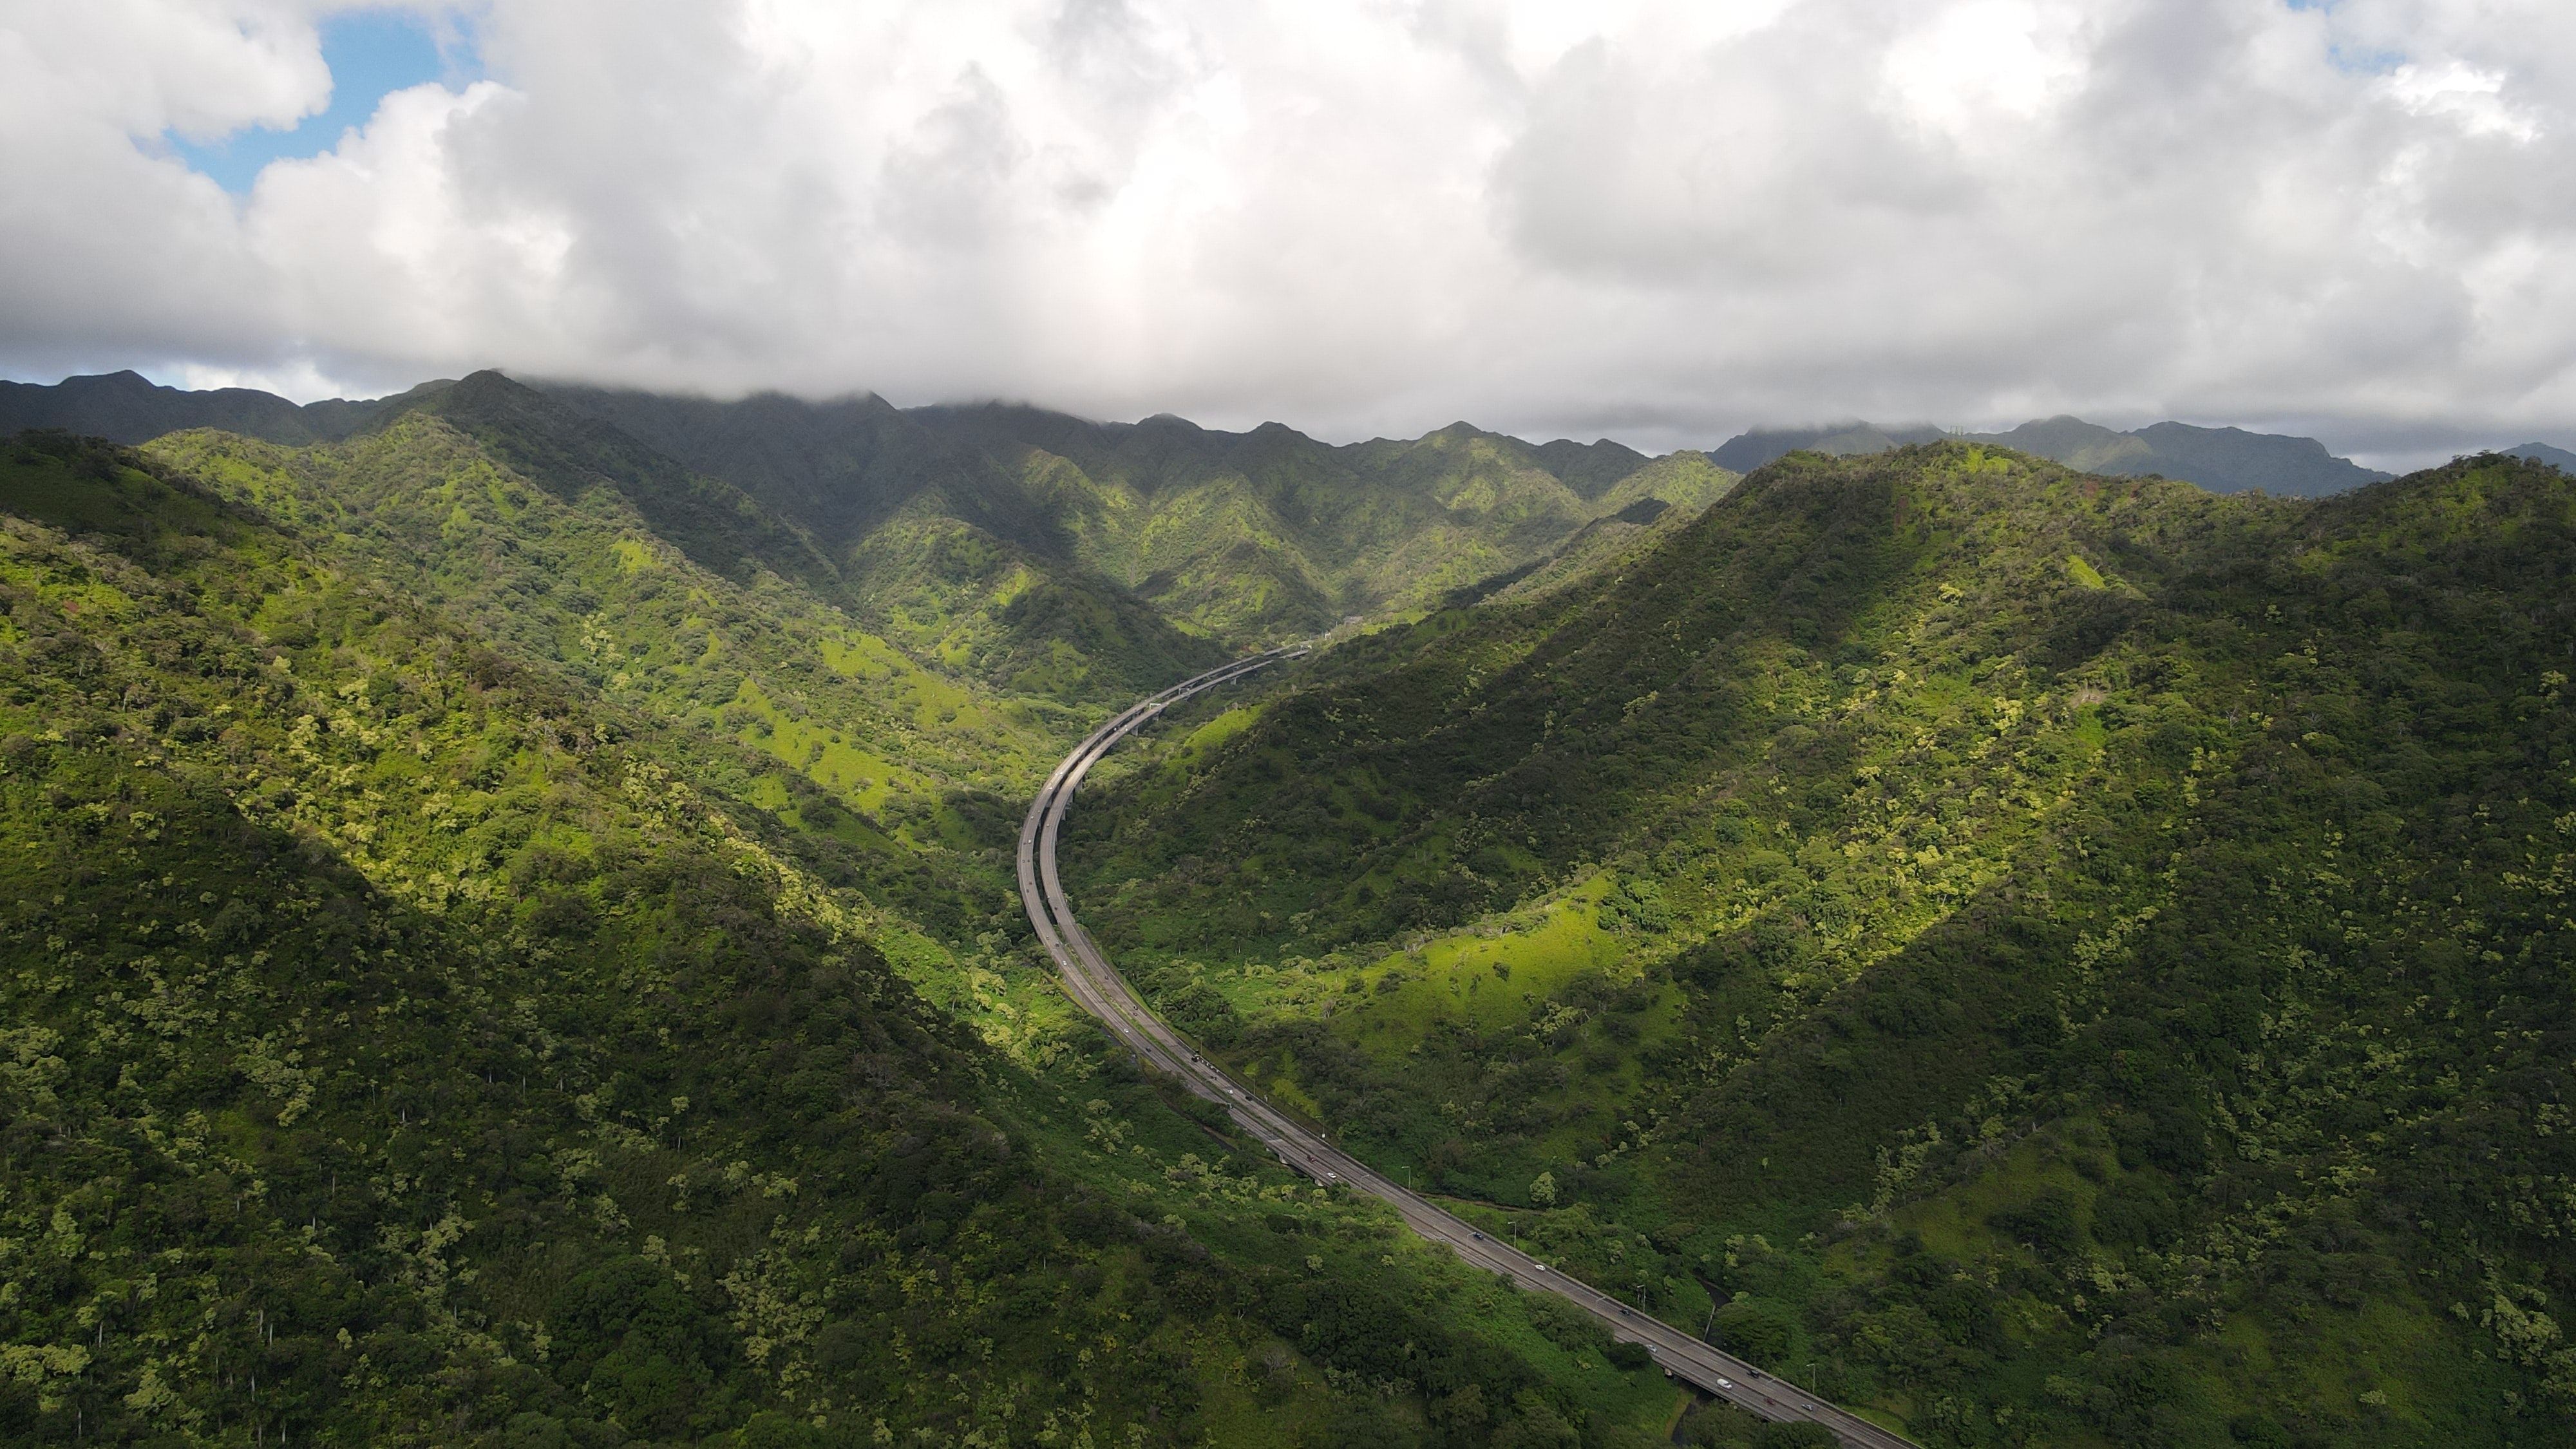 Pali Highway in Oahu.